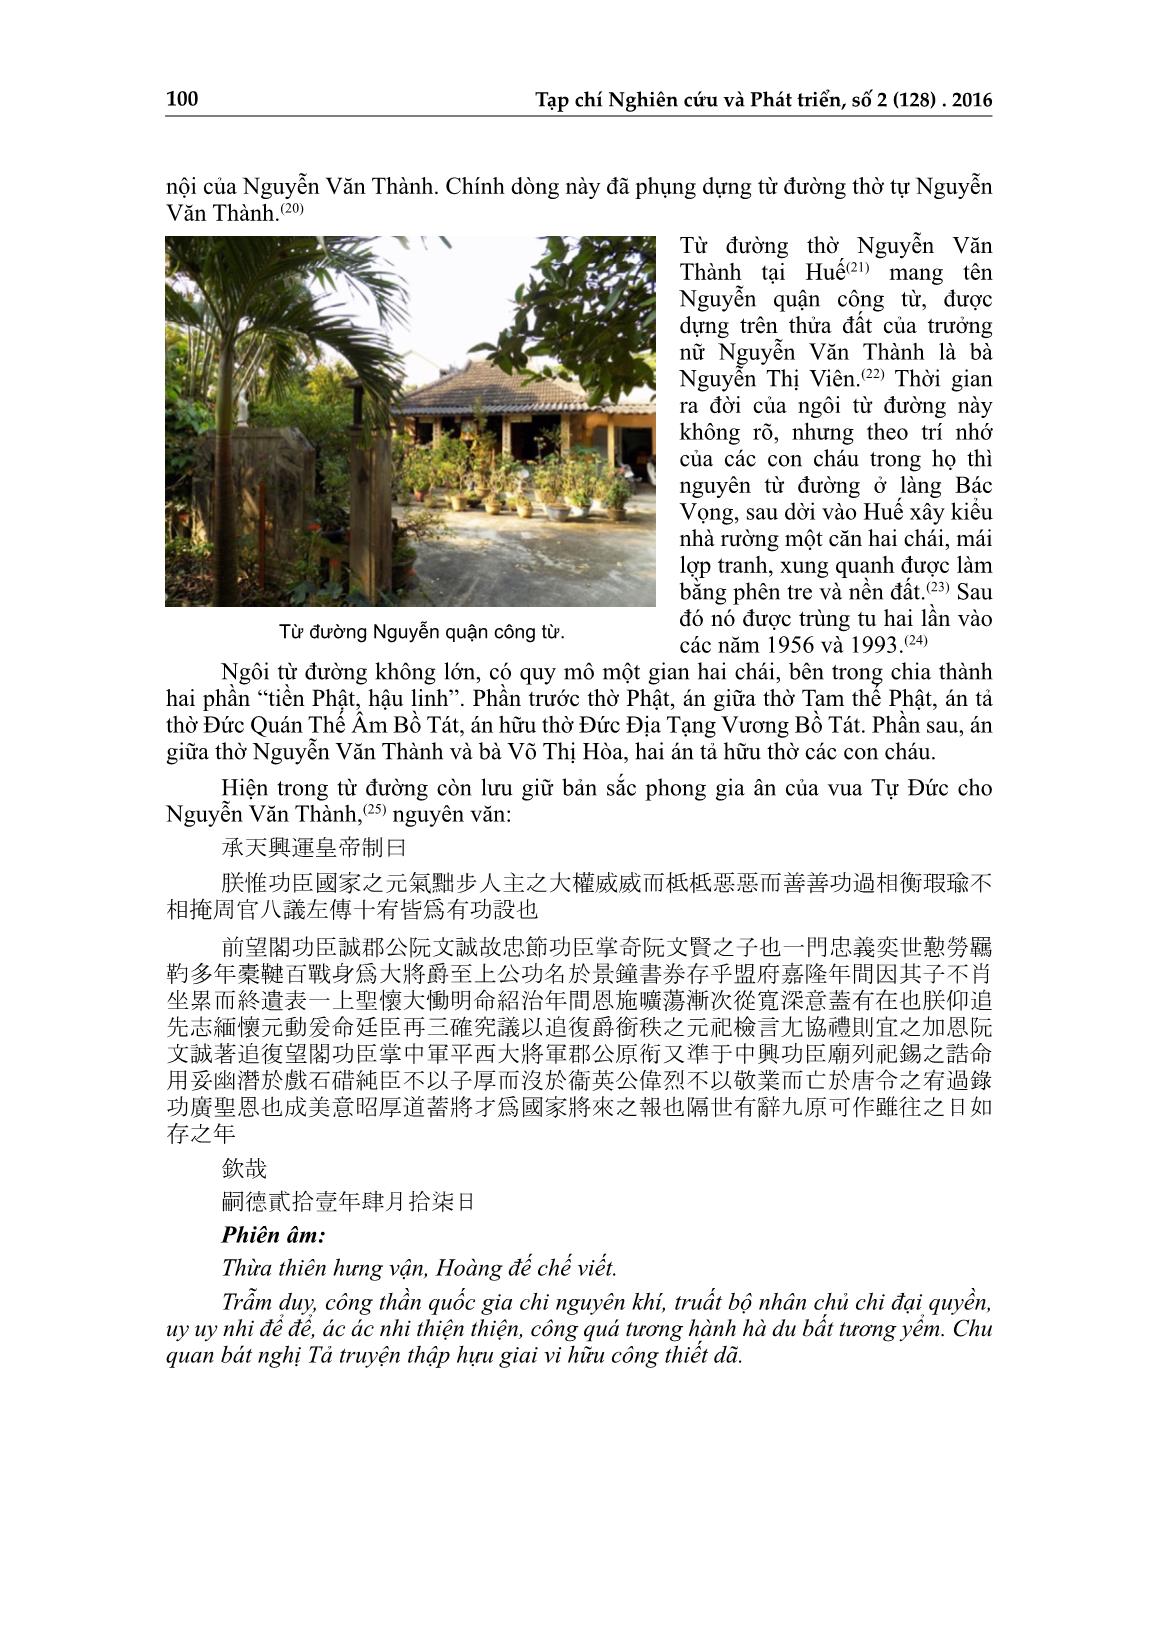 Dấu tích danh nhân Nguyễn Văn Thành trên đất Thừa Thiên Huế trang 6